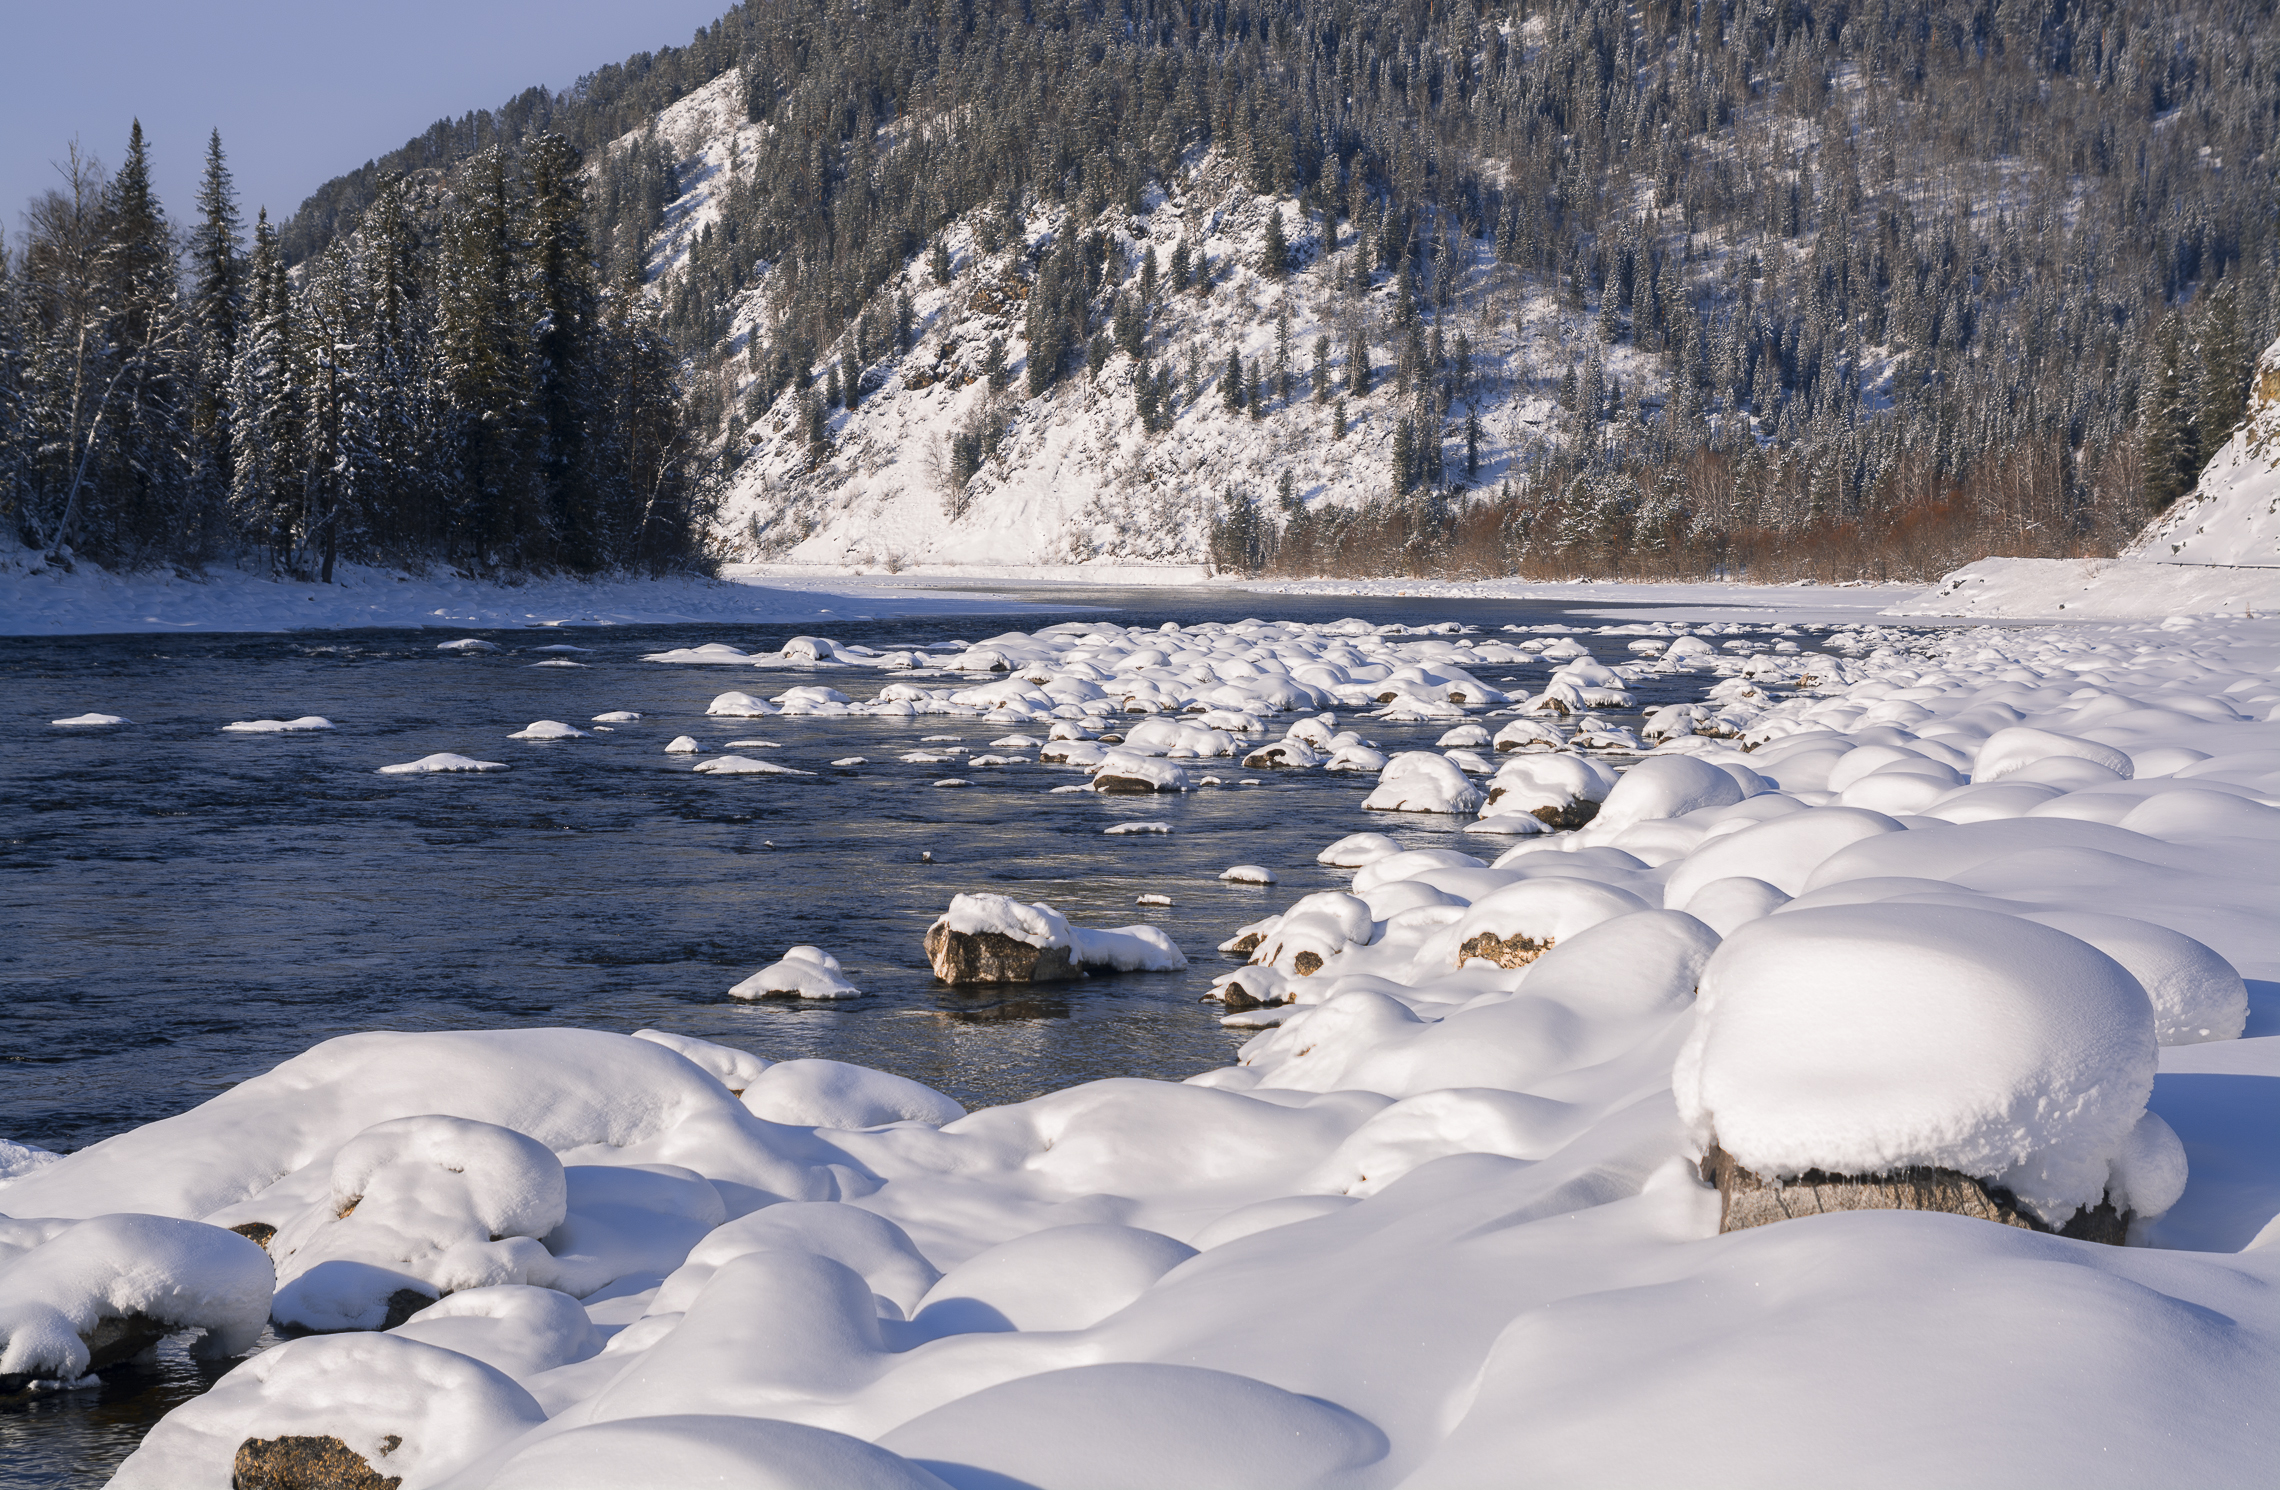 россия, горный алтай, река бия, снег на камнях,зима, Андрей Поляков